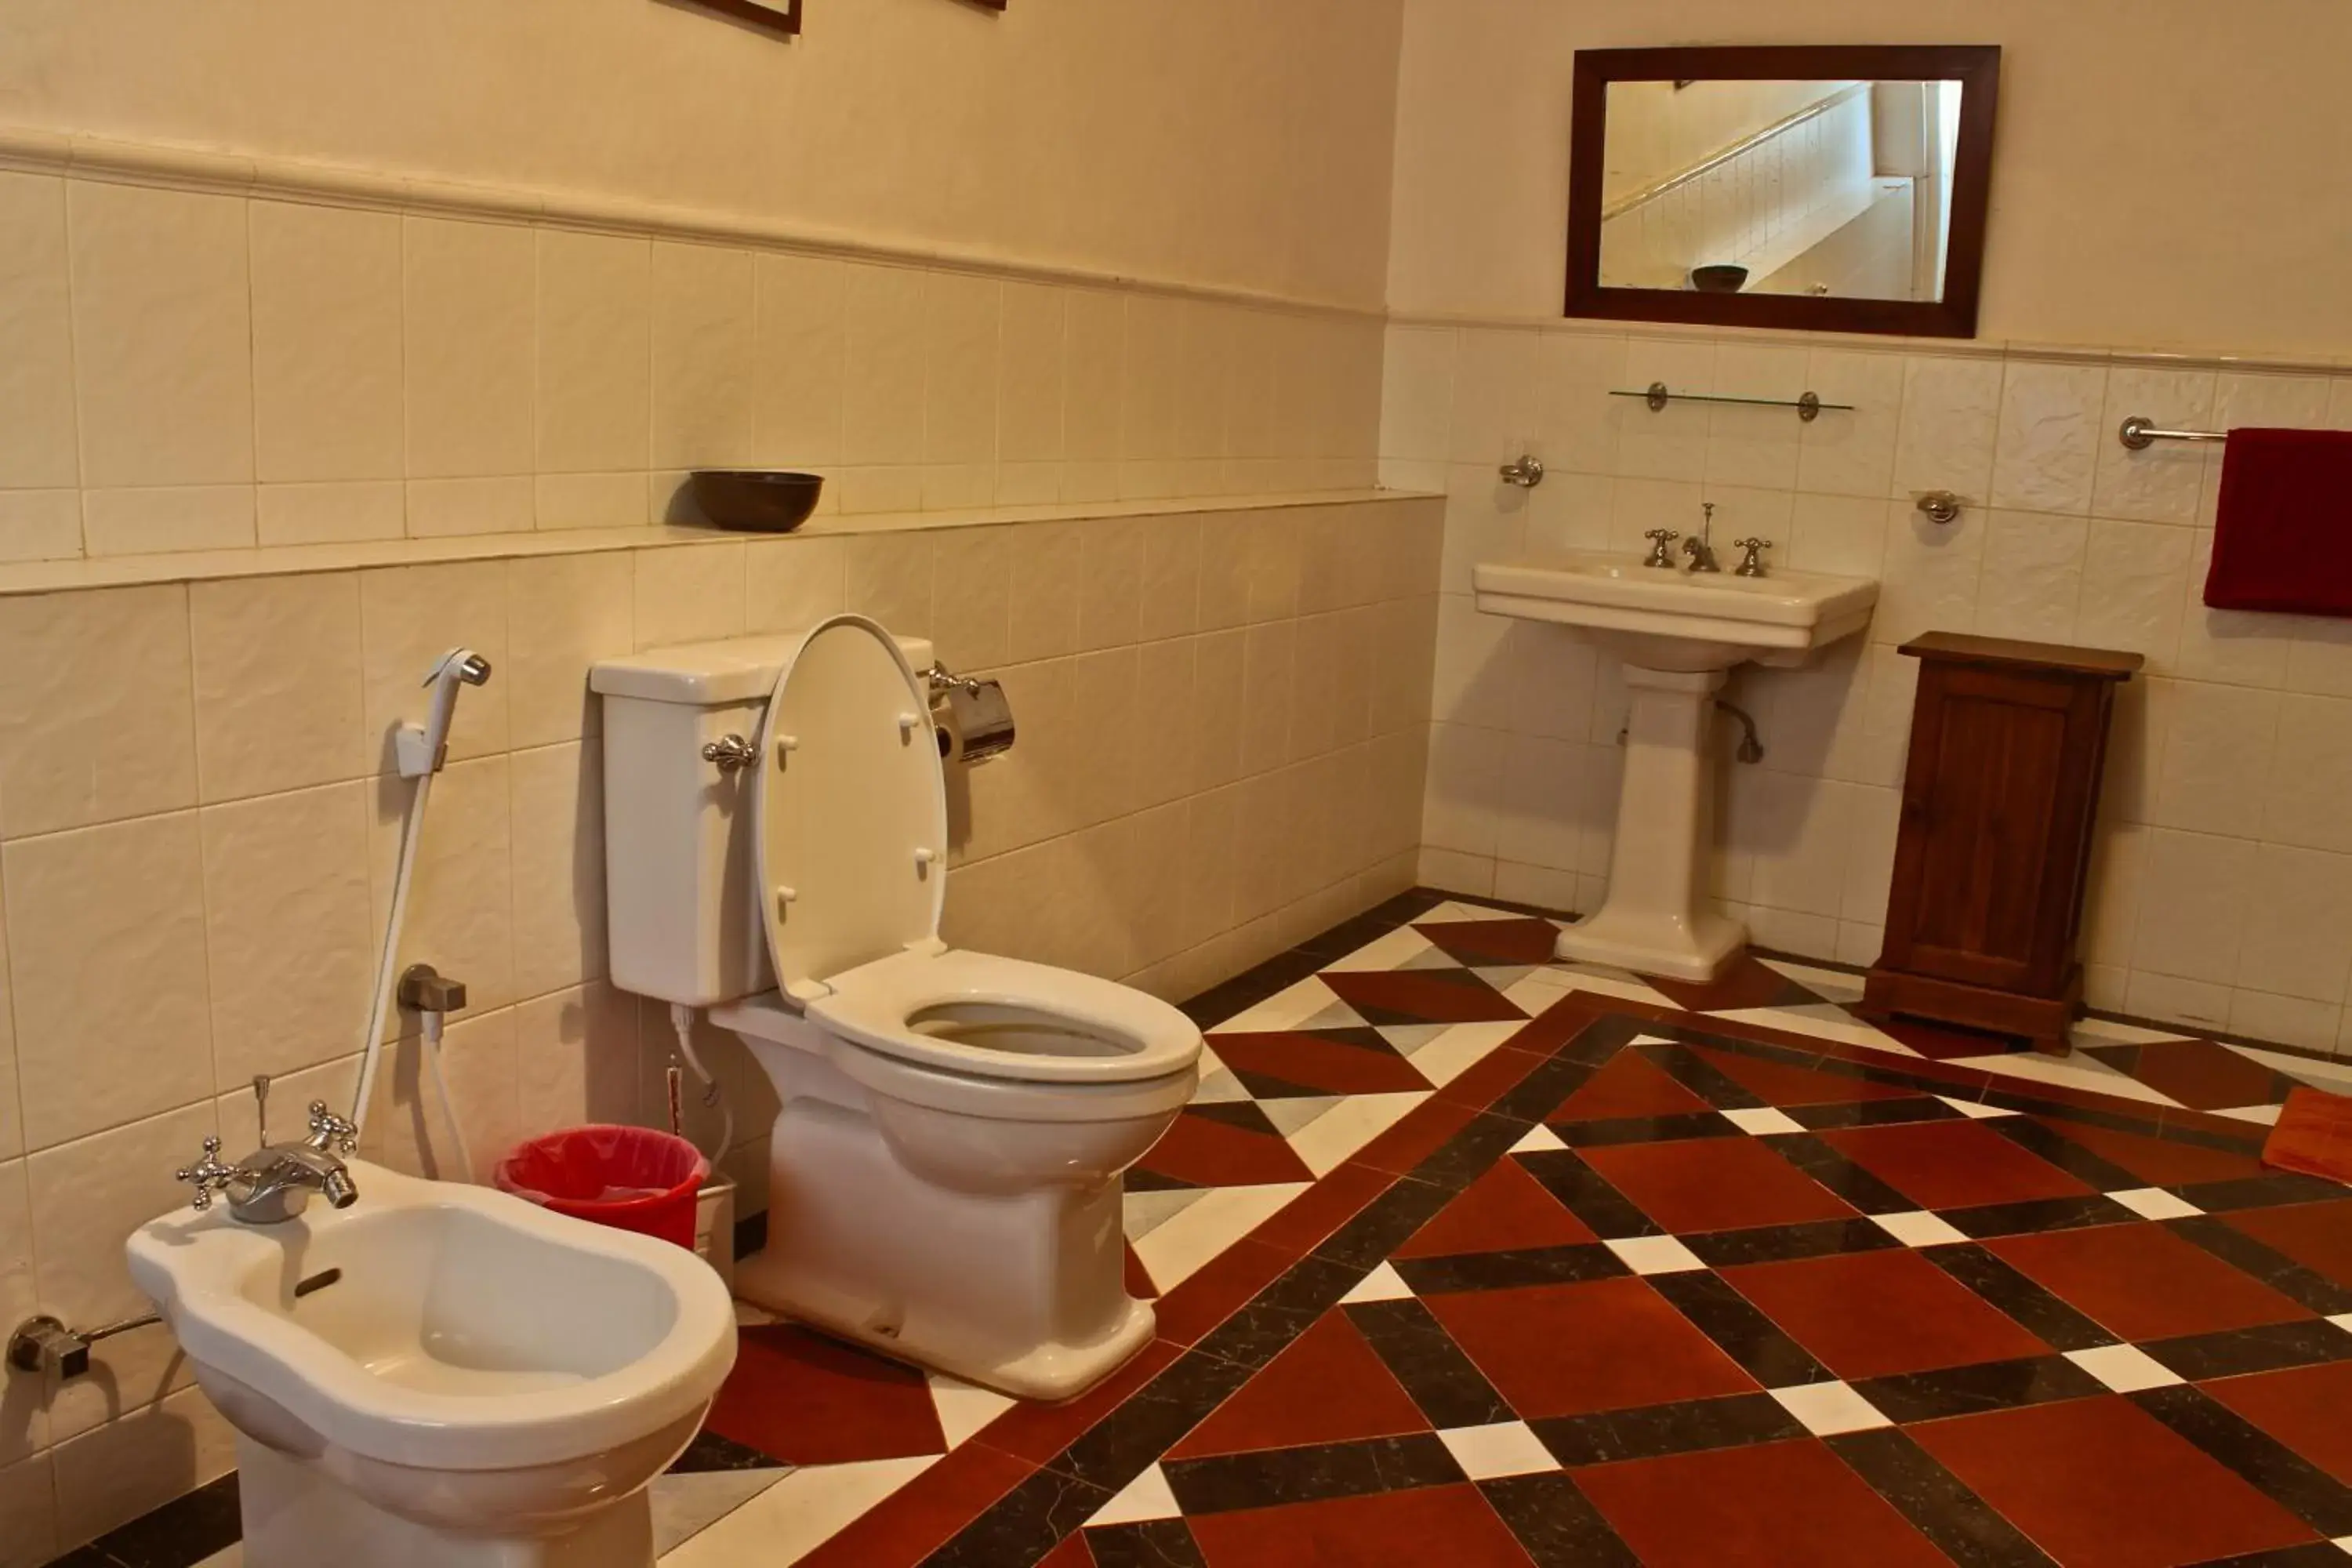 Toilet, Bathroom in Hatale Tea Garden Bungalow